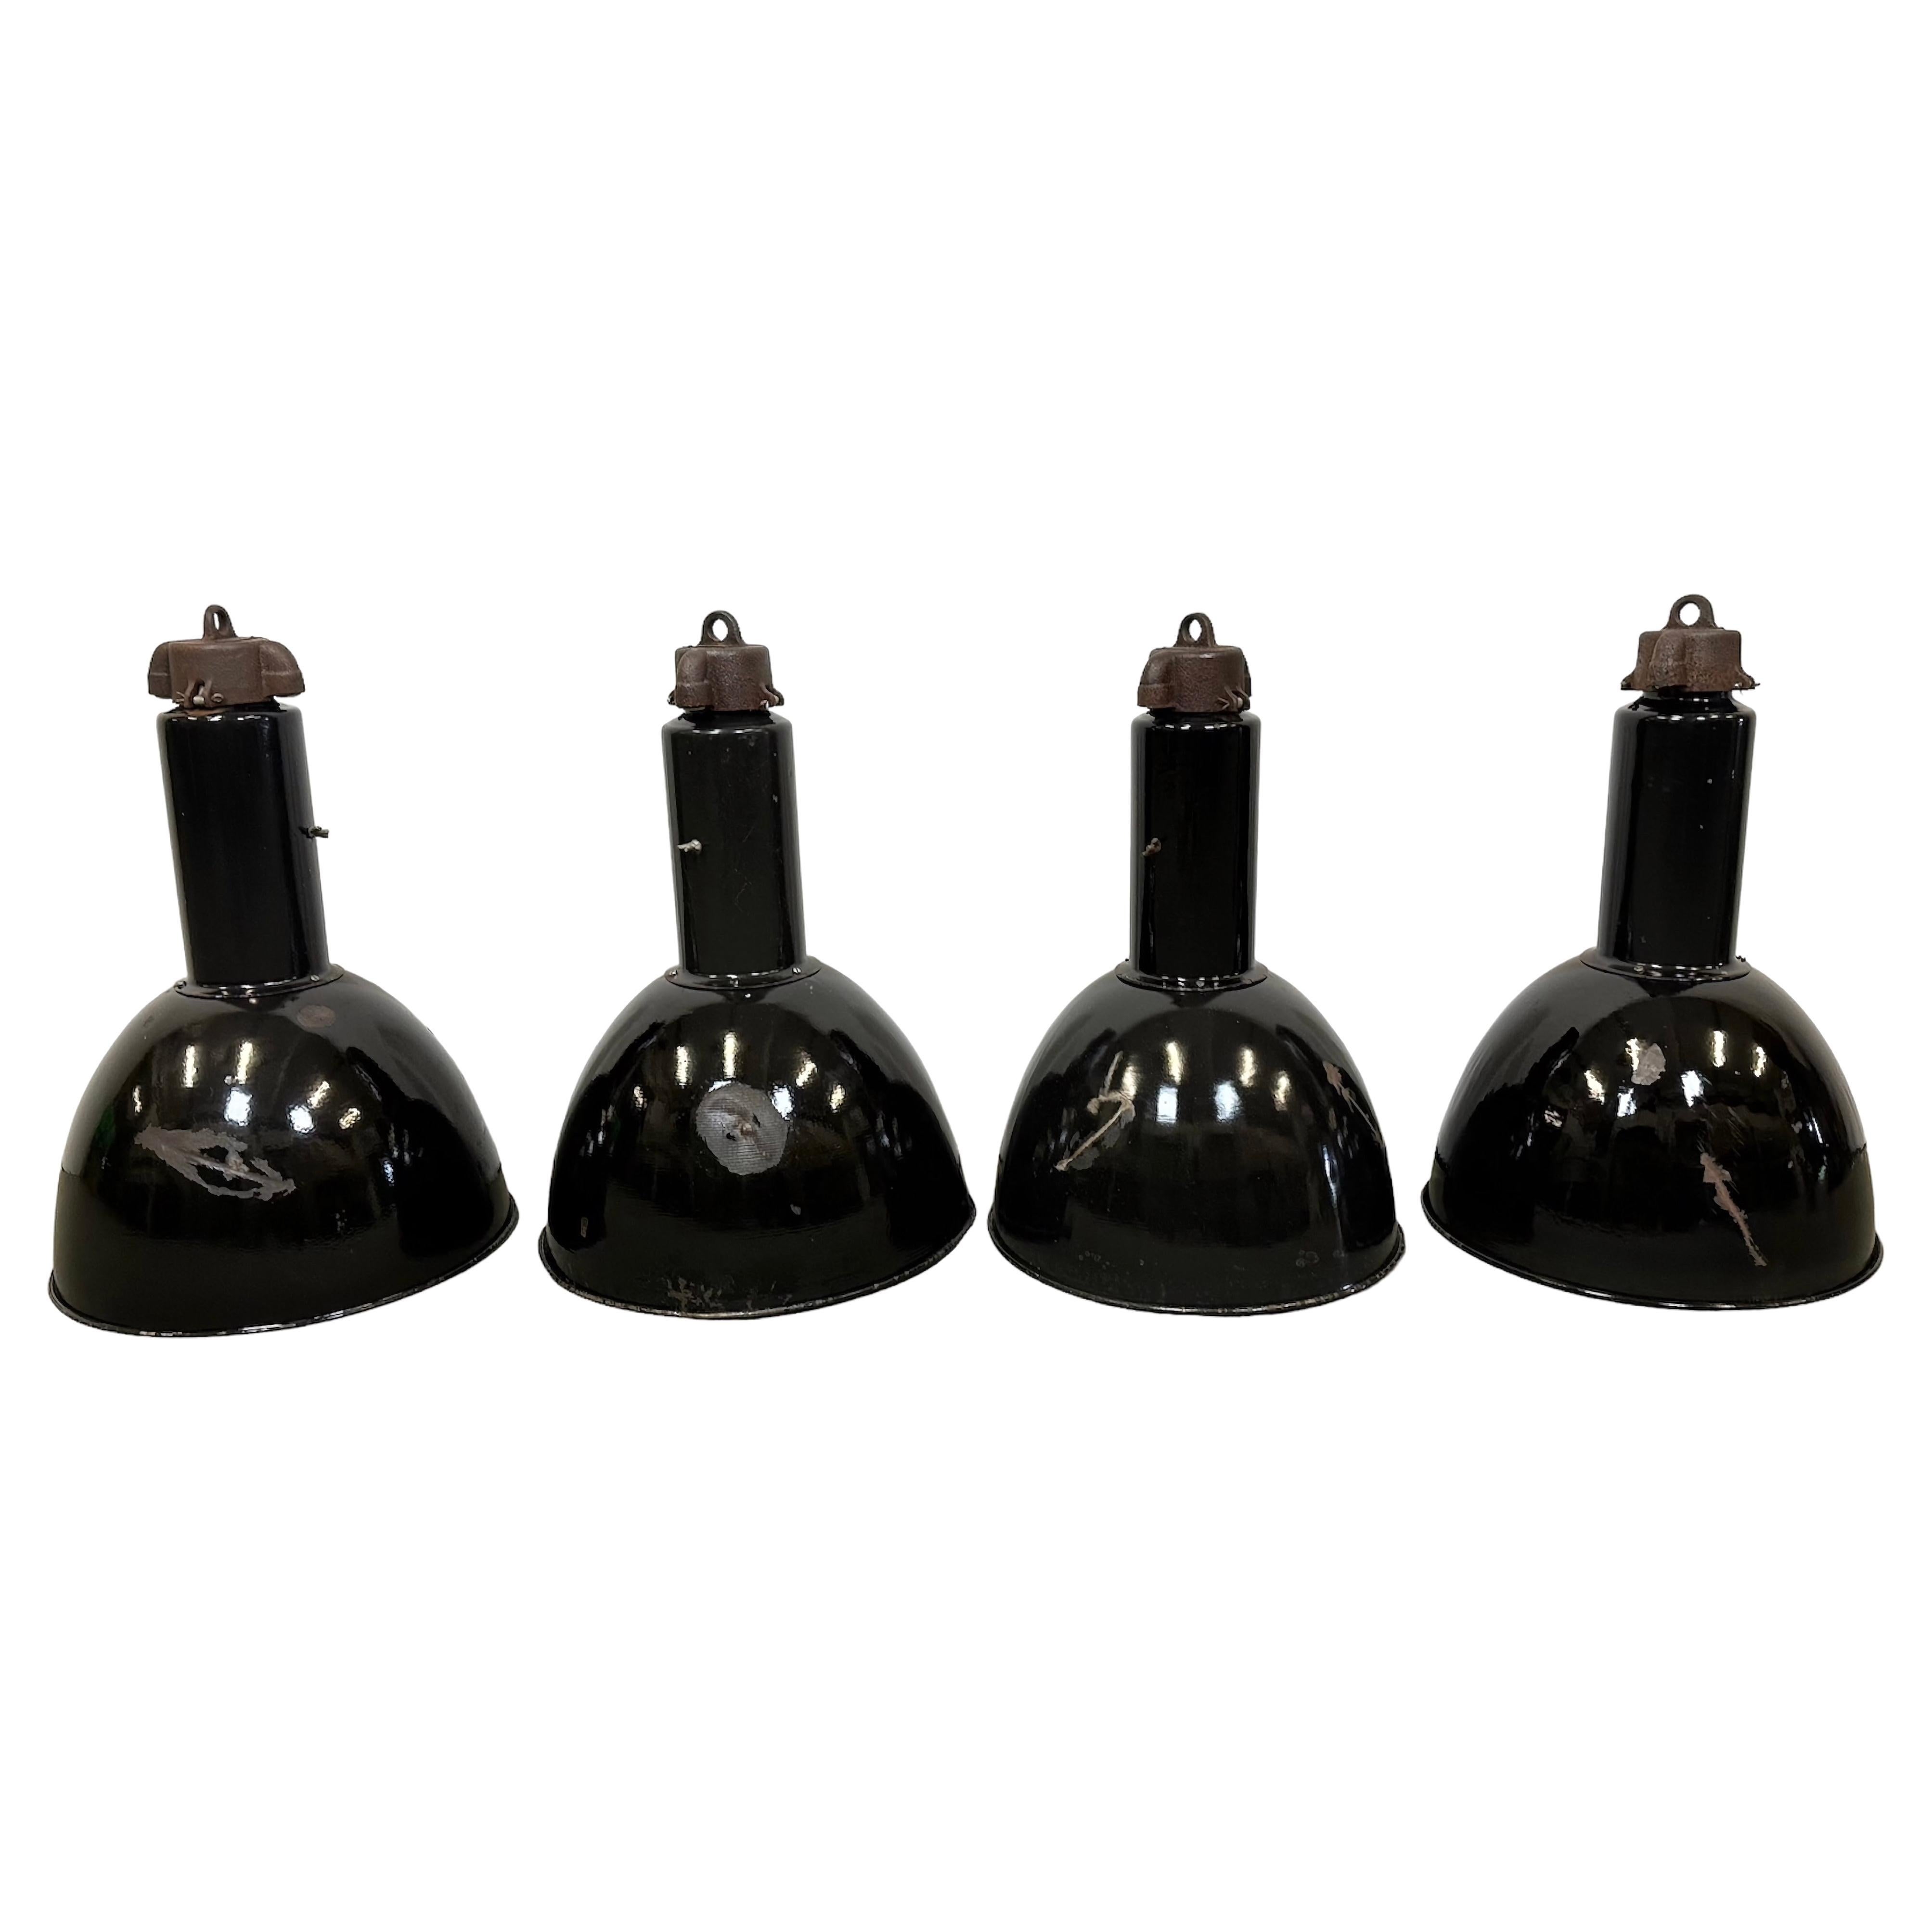 Set of 4 Industrial Bauhaus Black Enamel Pendant Lamps, 1950s For Sale